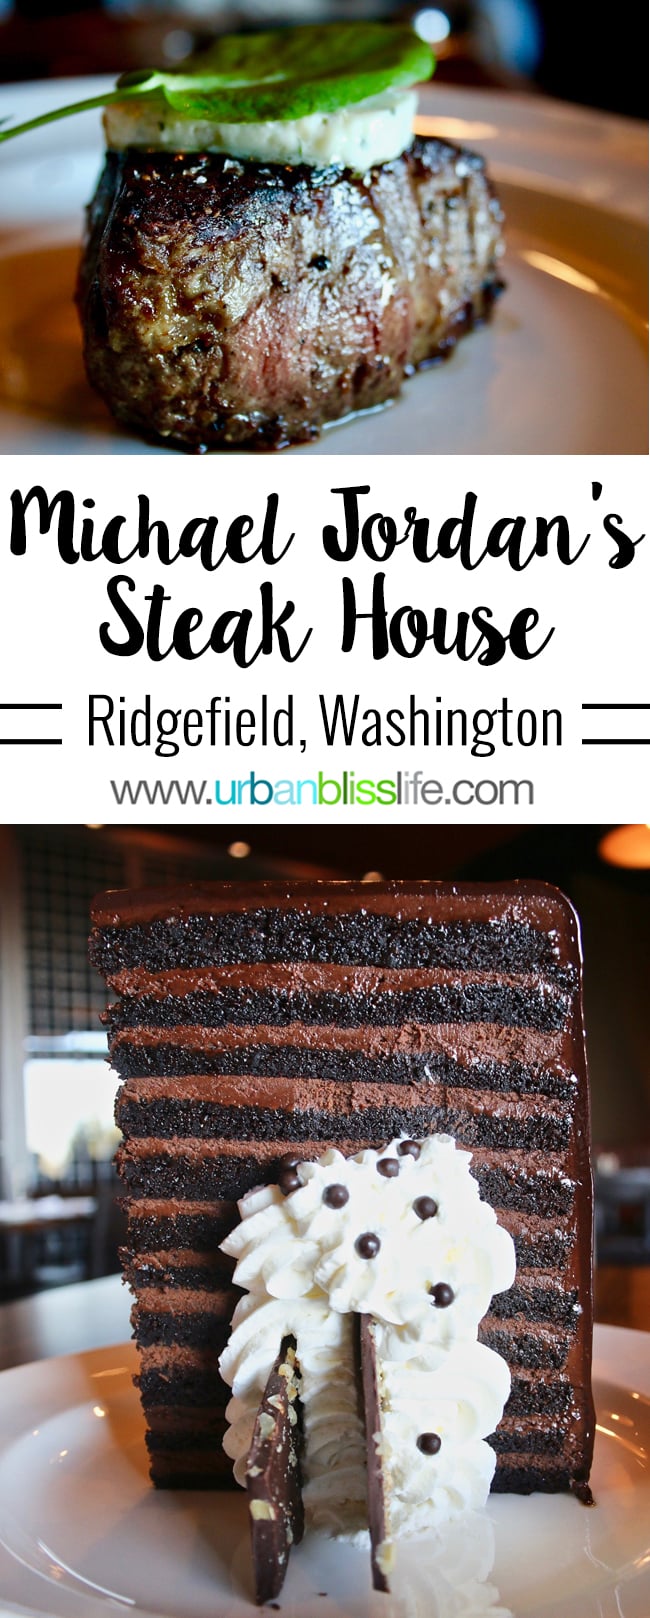 Michael Jordan's Steak House restaurant review on UrbanBlissLife.com